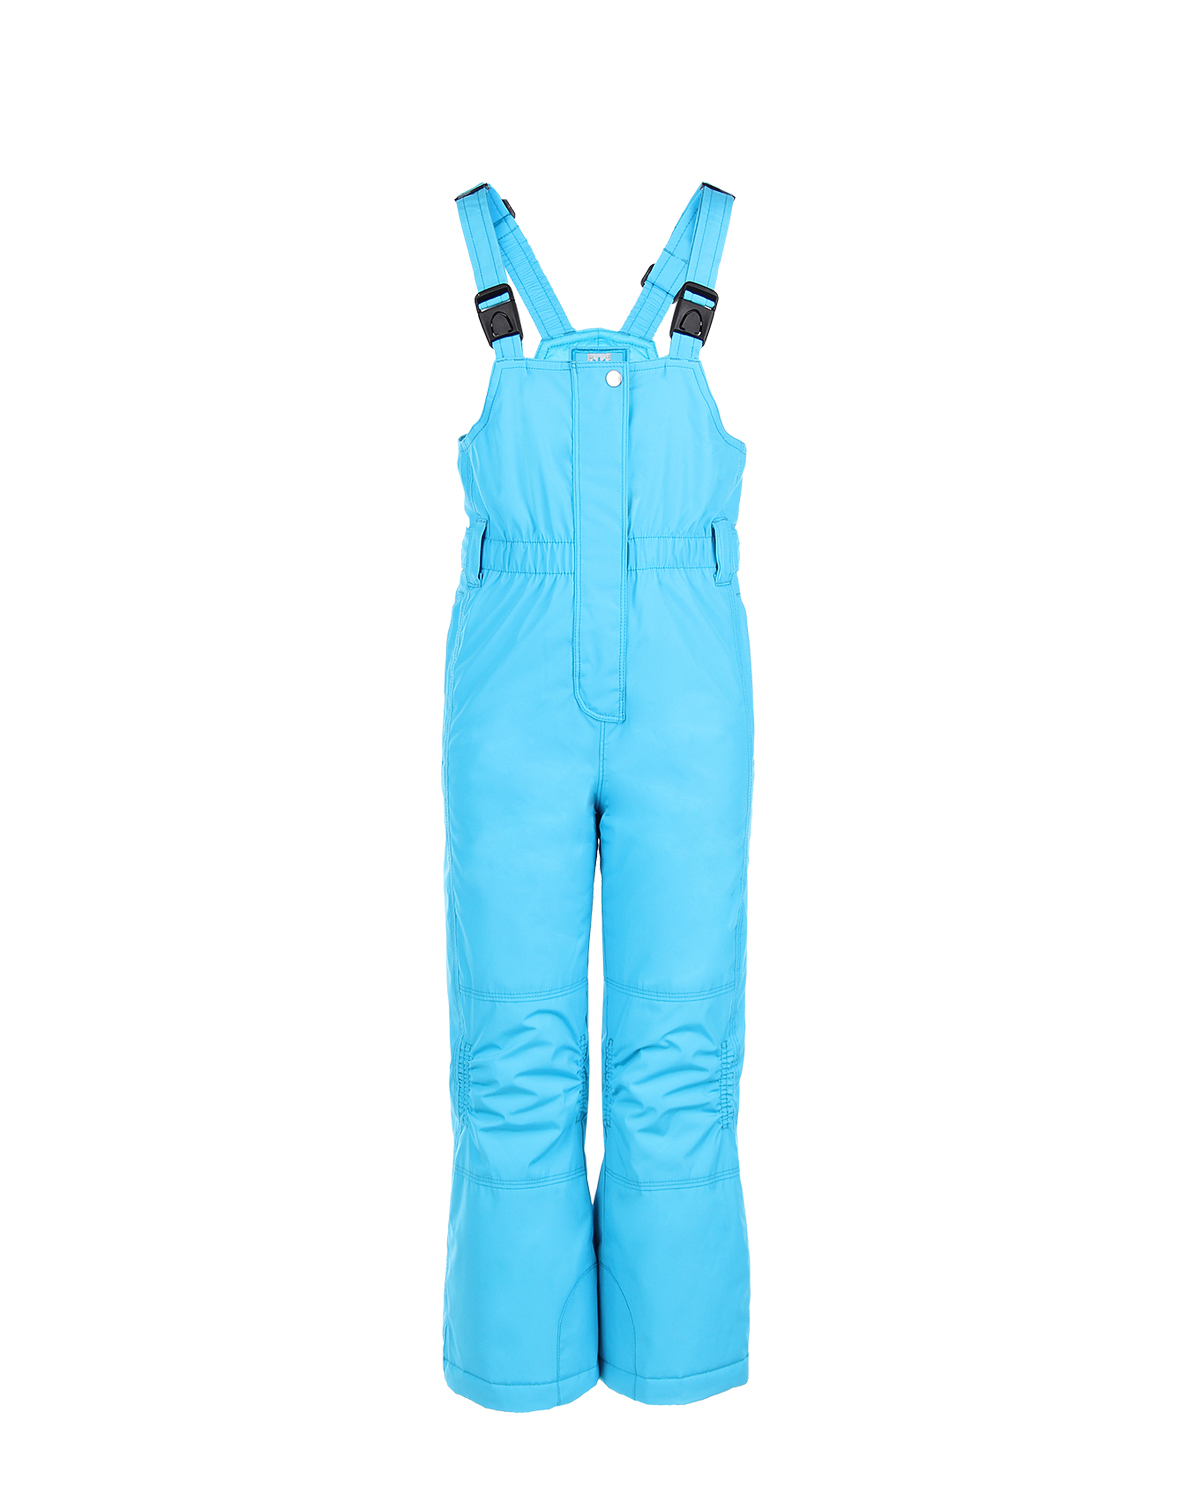 Комплект, куртка и полукомбиезон, голубой с вышивкой Poivre Blanc детский - фото 4